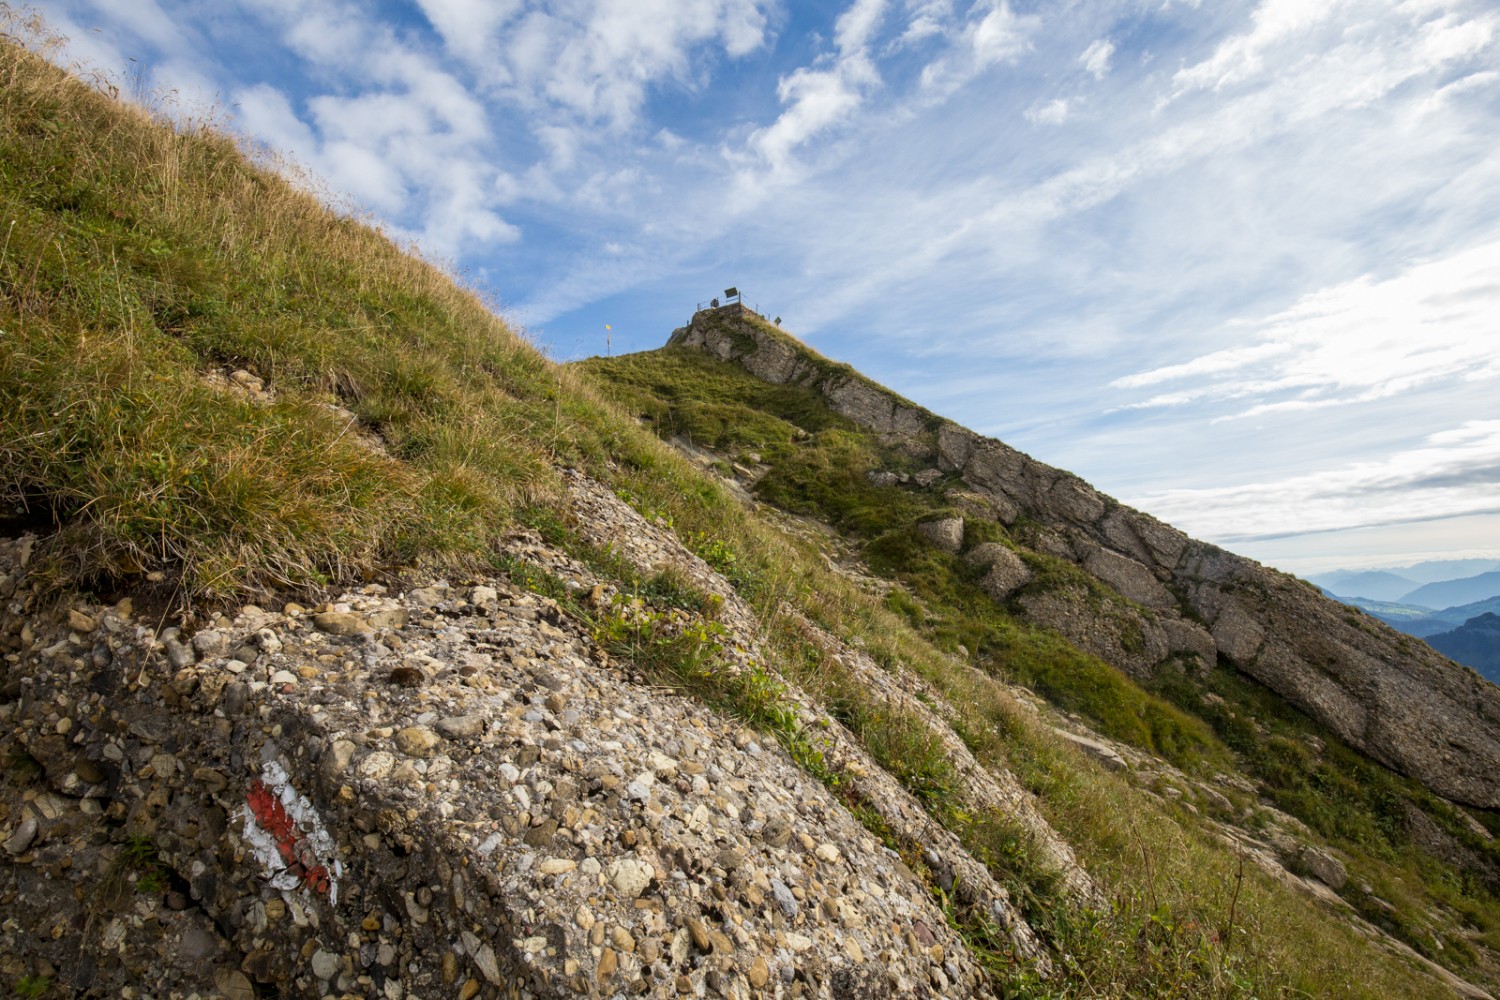 Vom Aufstieg auf den Speer aus sieht man im Vordergrund deutlich die Nagelfluh, aus der der Berg besteht. Bild: Daniel Fleuti 